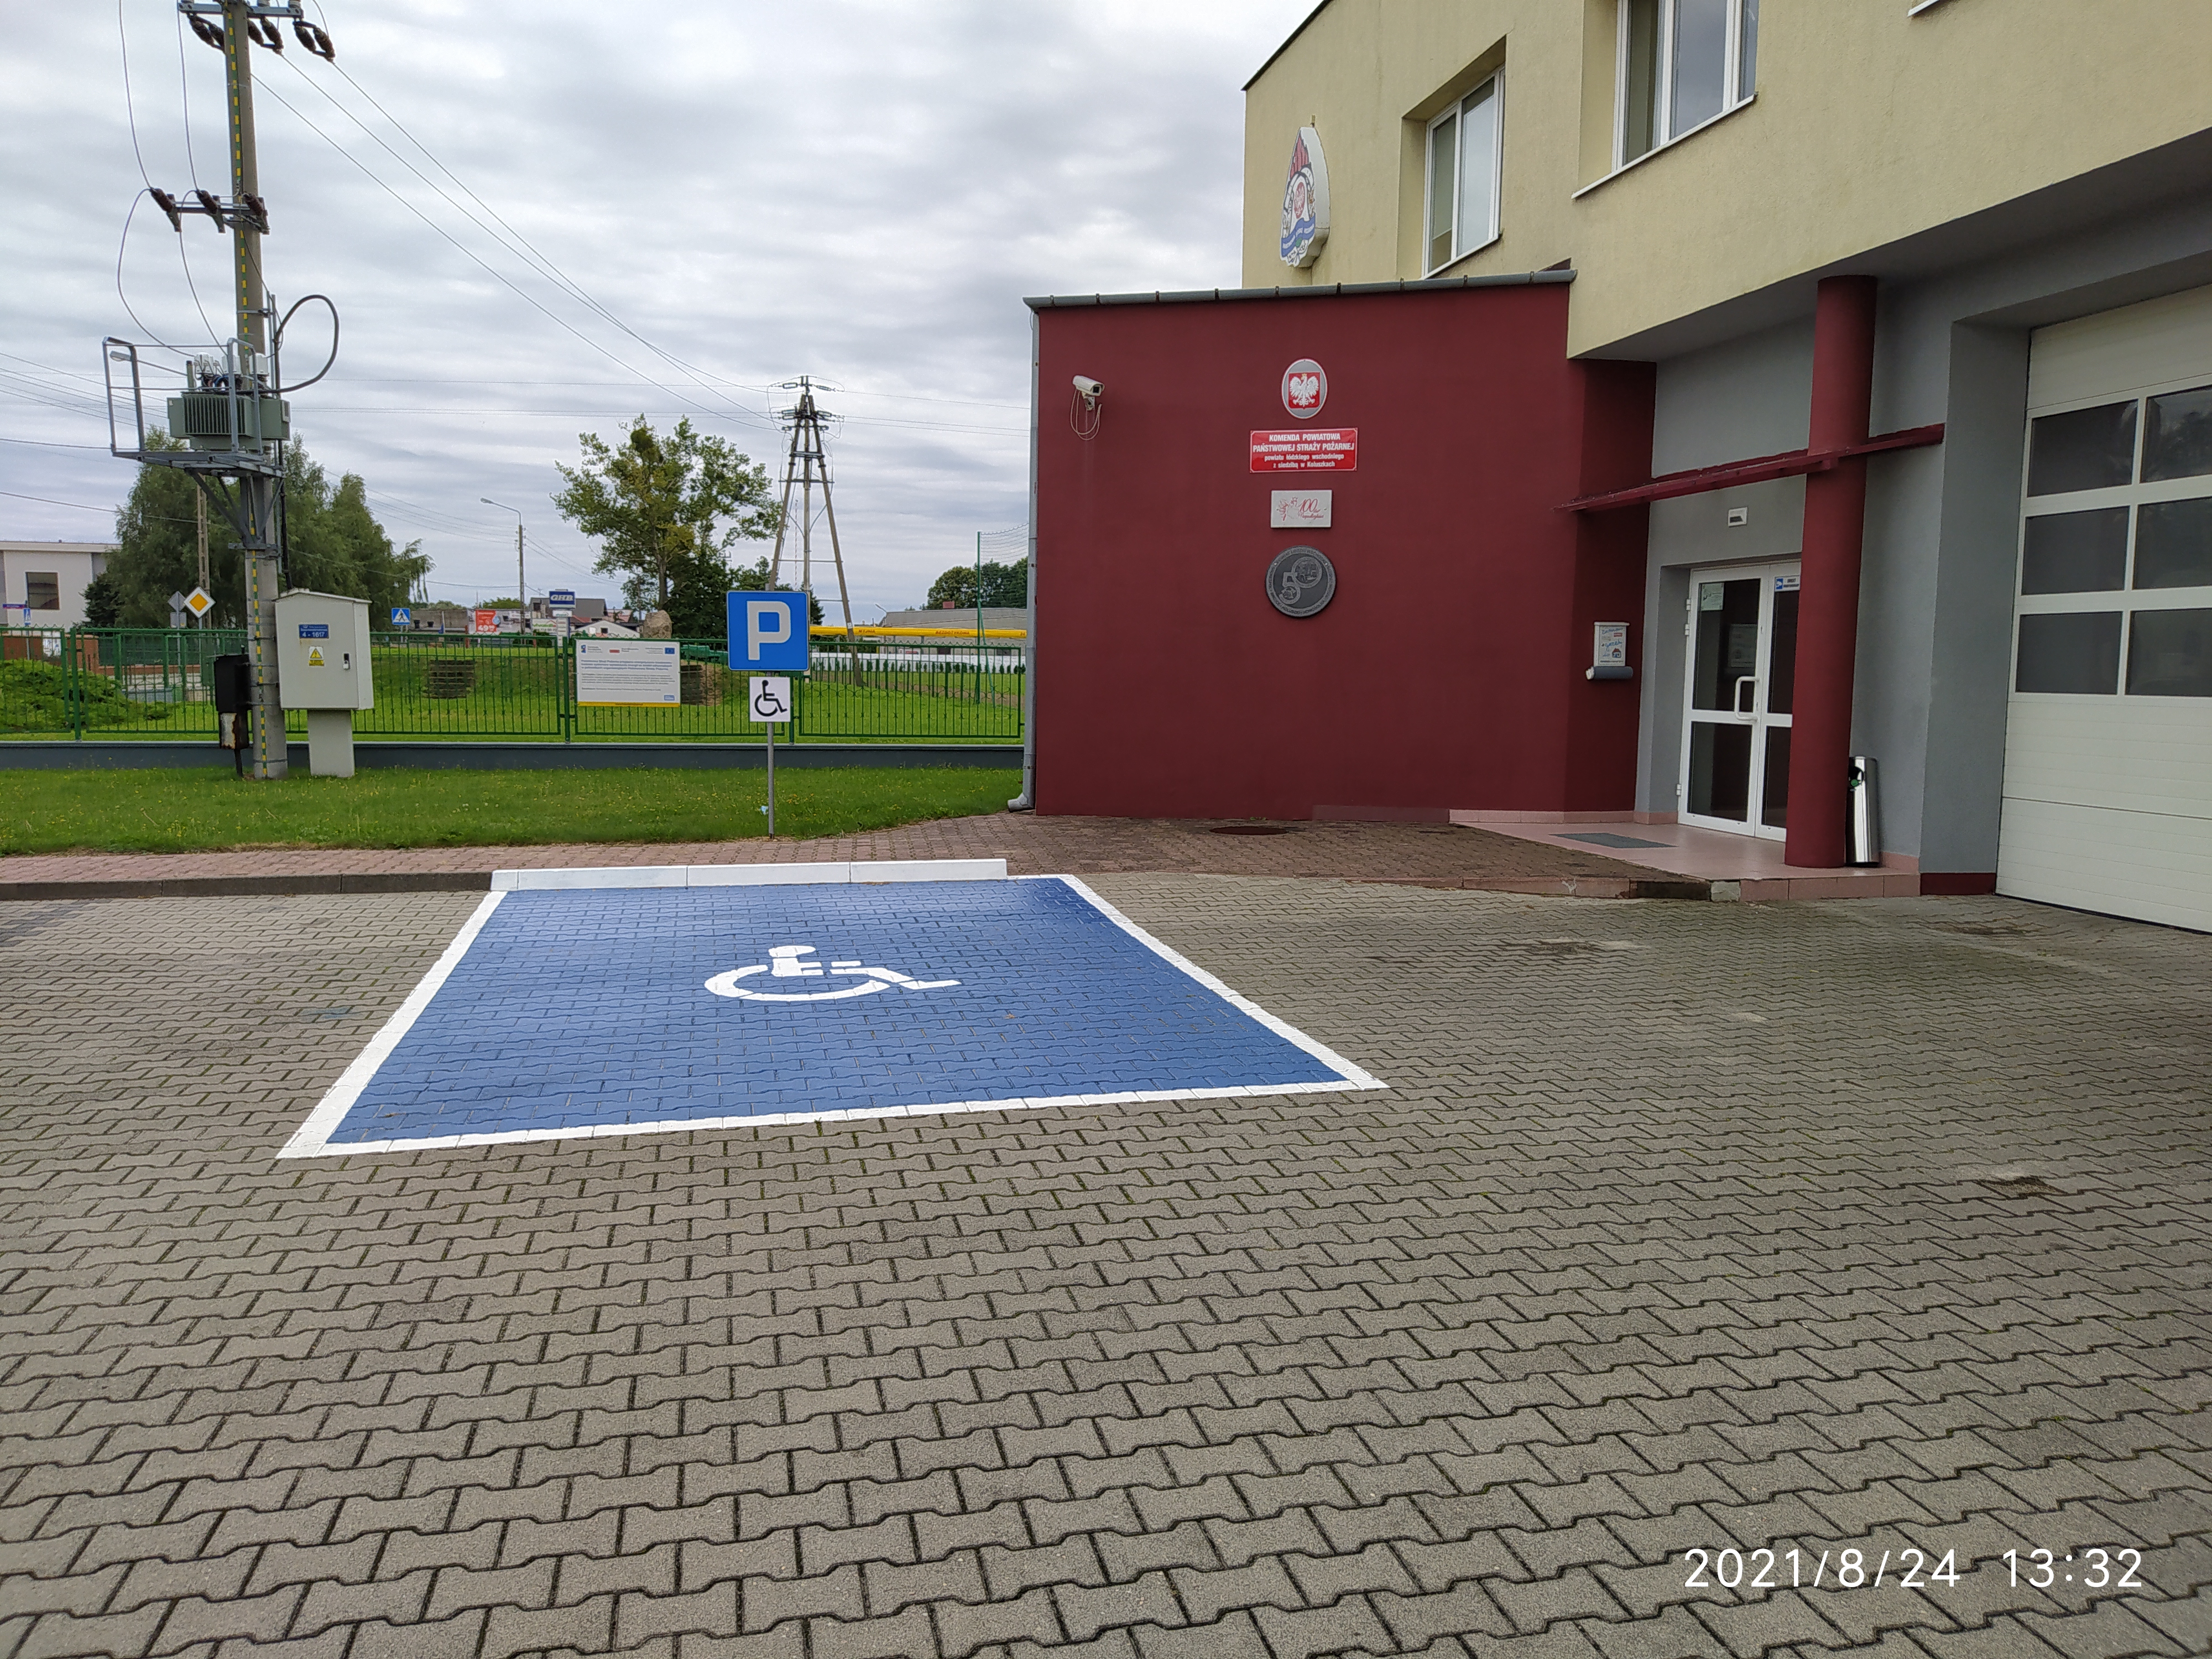 Zdjęcie przedstawia wejście do budynku Komendy Powiatowej PSP w Koluszkach, przed drzwiami widoczne miejsce parkingowe dla osób niepełnosprawnych. 